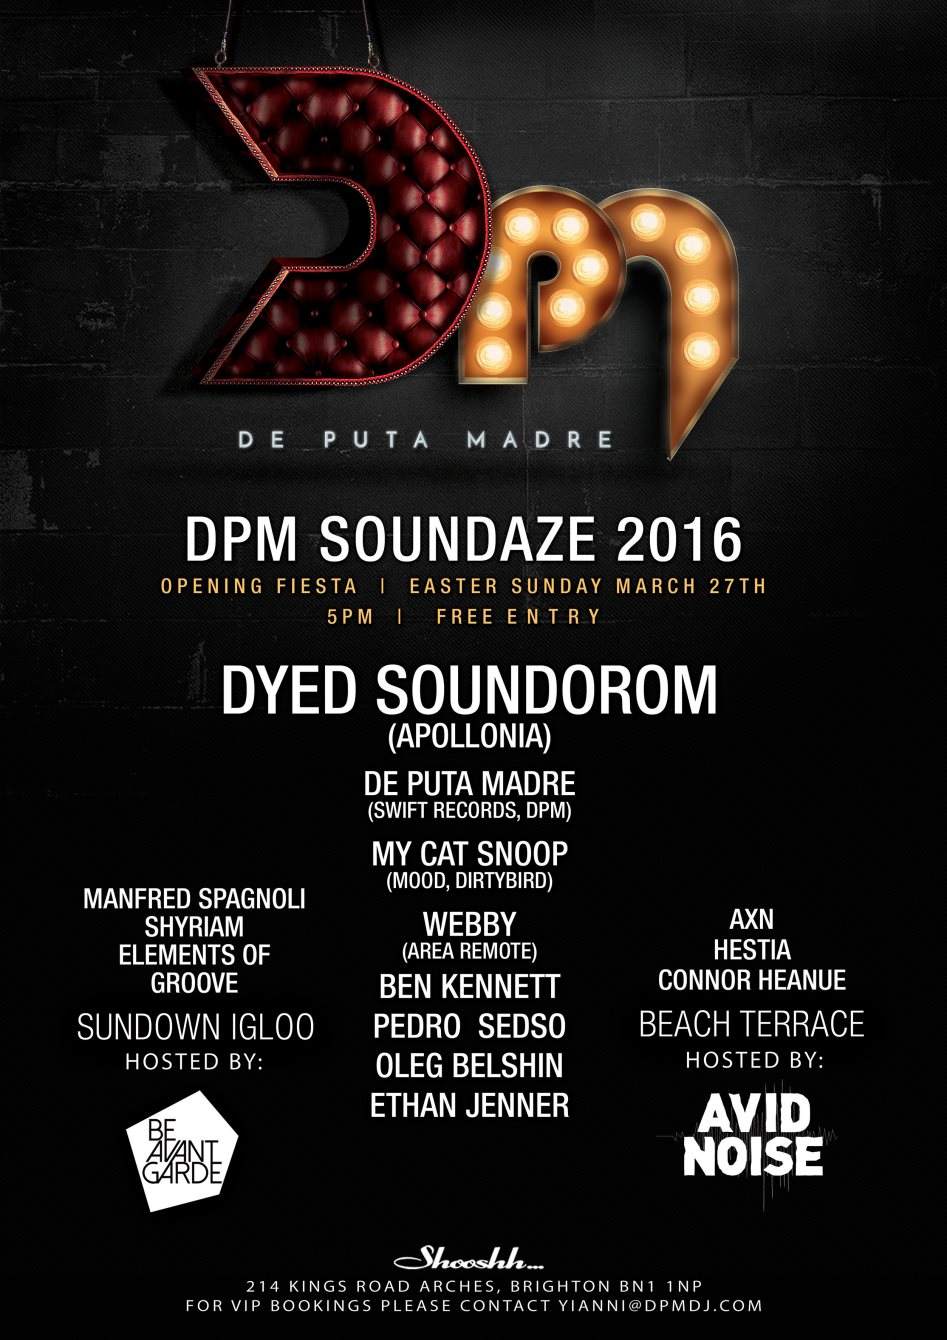 DPM 2016 Opening: Dyed Soundorom - Página frontal